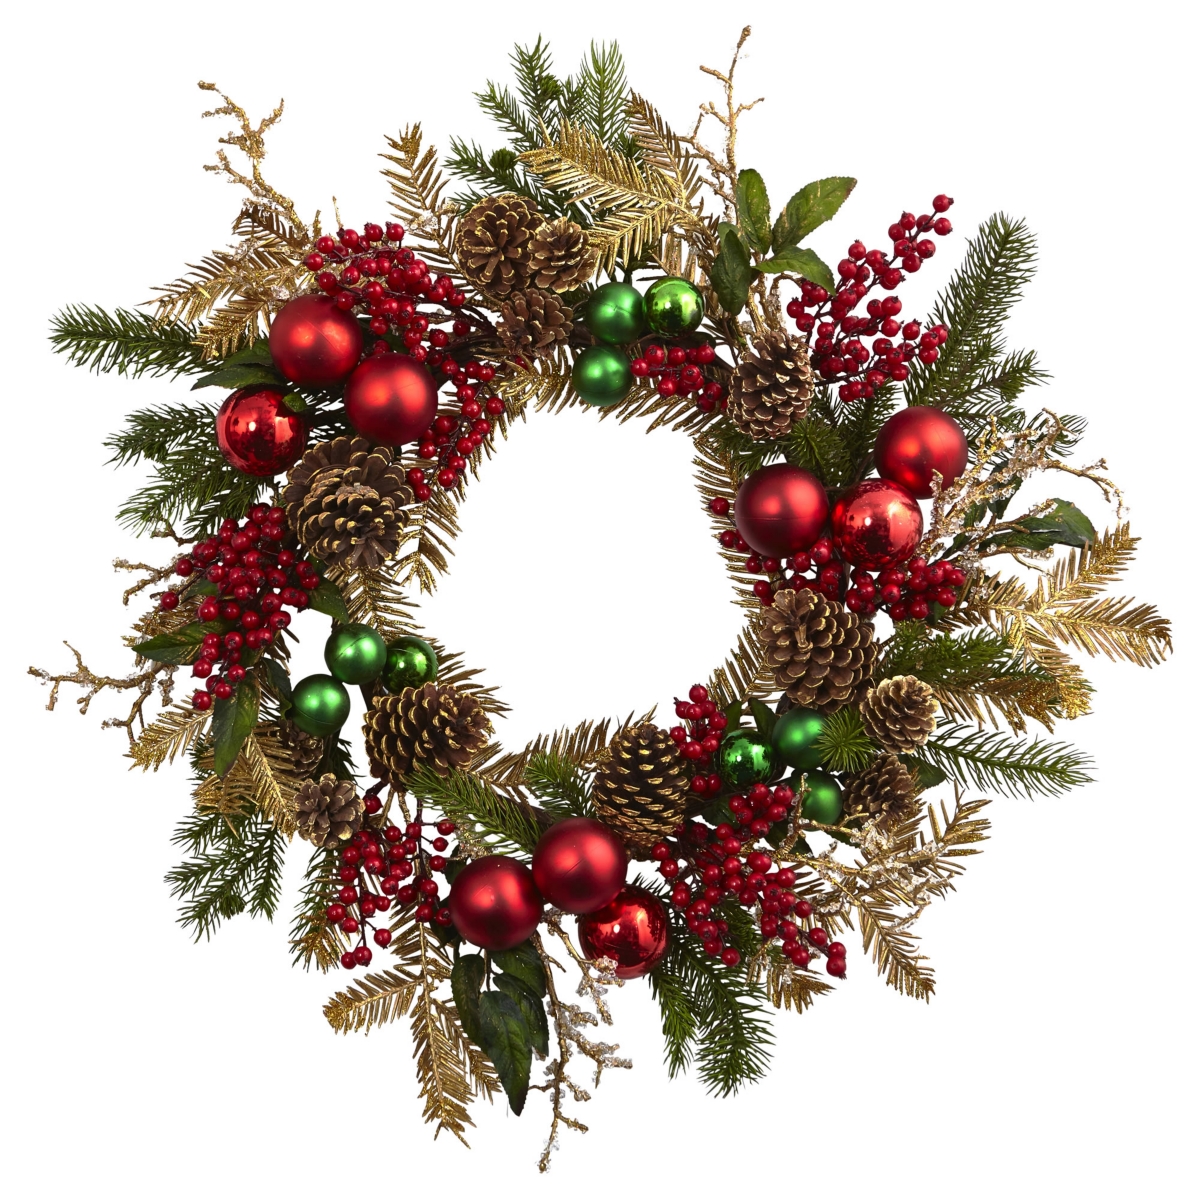 24" Ornament, Pine and Pine cone Wreath - Multi